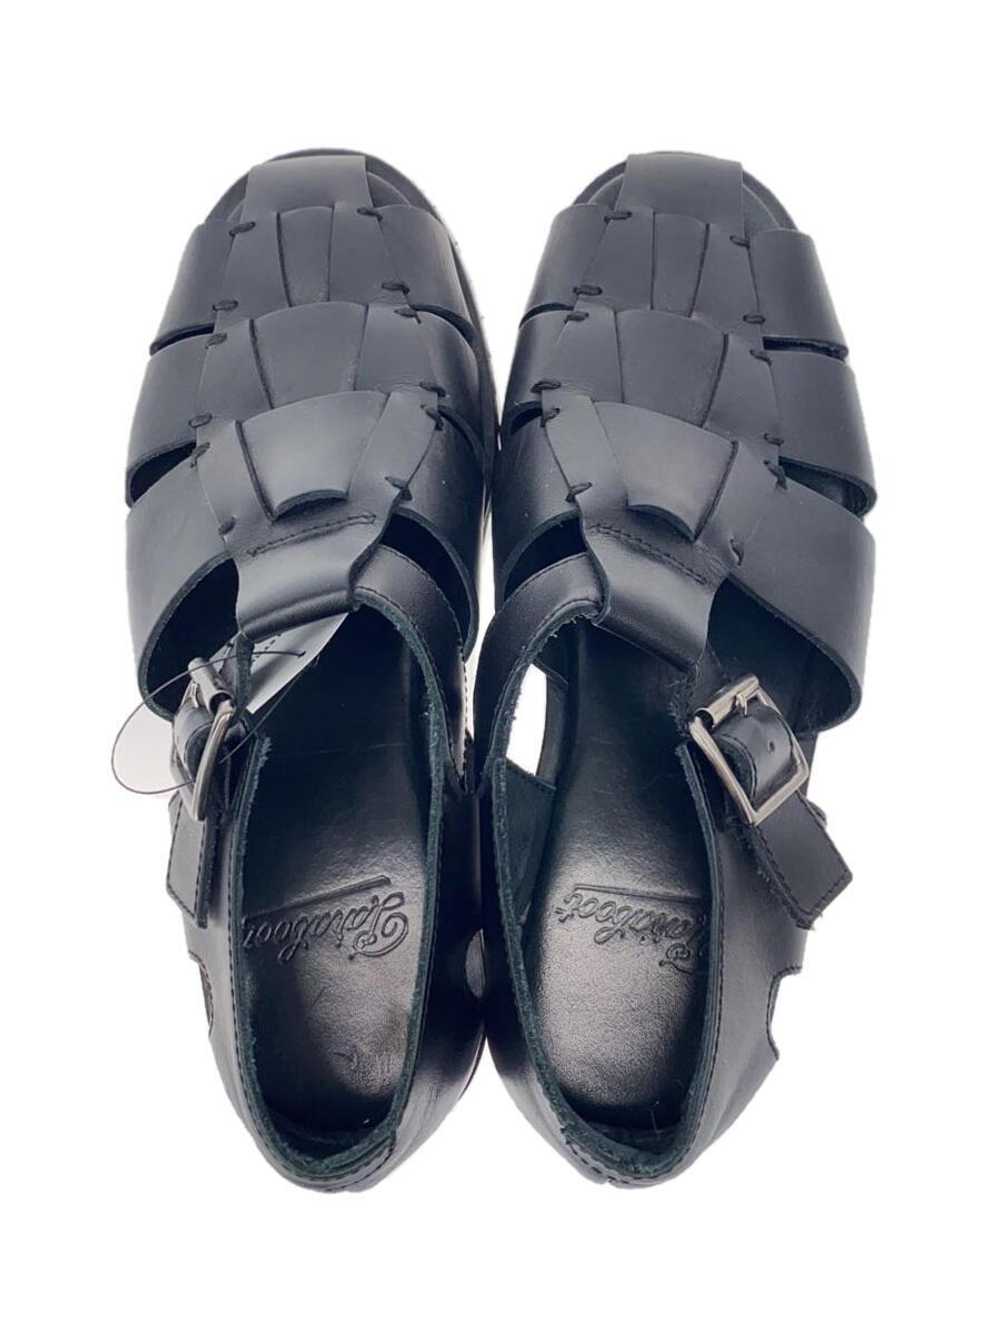 Paraboot Sandals/40/Blk/Pacific/Gurkha Shoes BUY47 - image 3